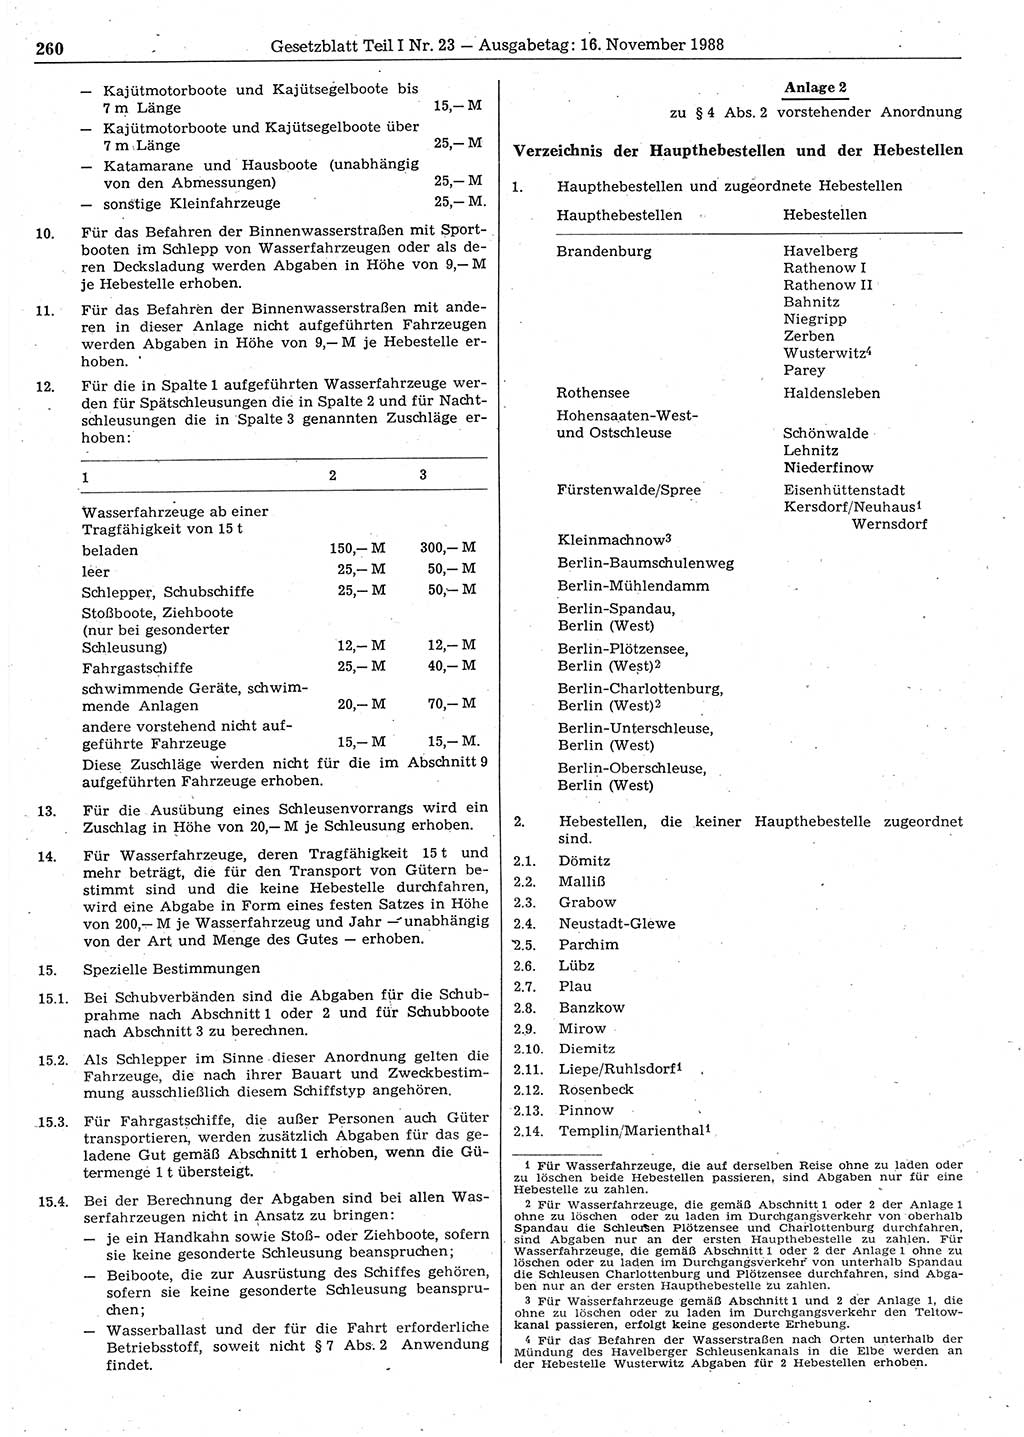 Gesetzblatt (GBl.) der Deutschen Demokratischen Republik (DDR) Teil Ⅰ 1988, Seite 260 (GBl. DDR Ⅰ 1988, S. 260)